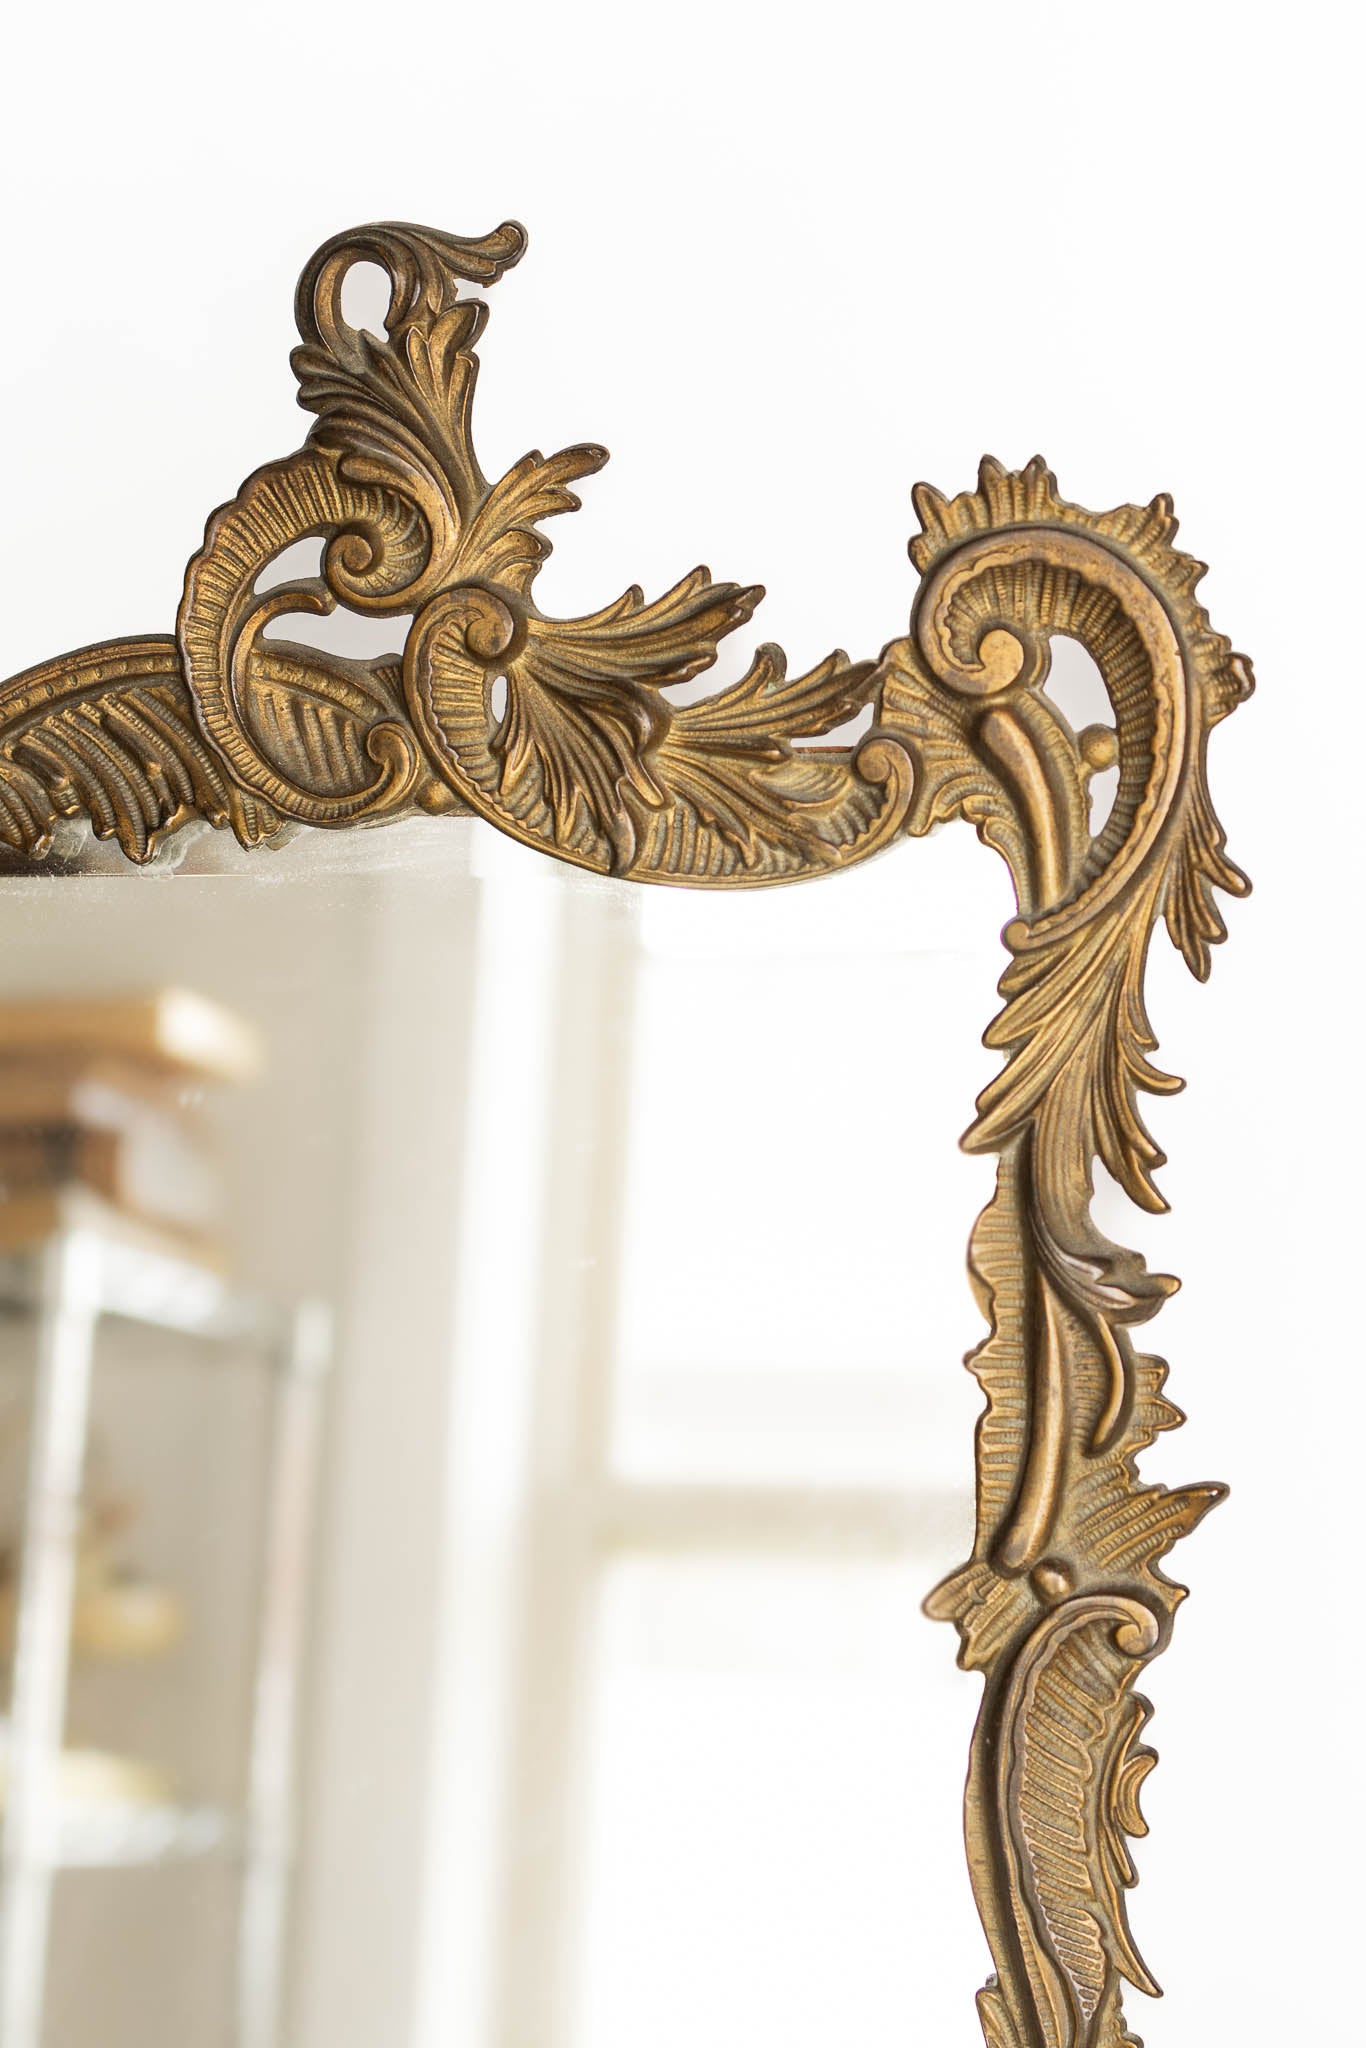 Orante Antique Vanity Desk Mirror